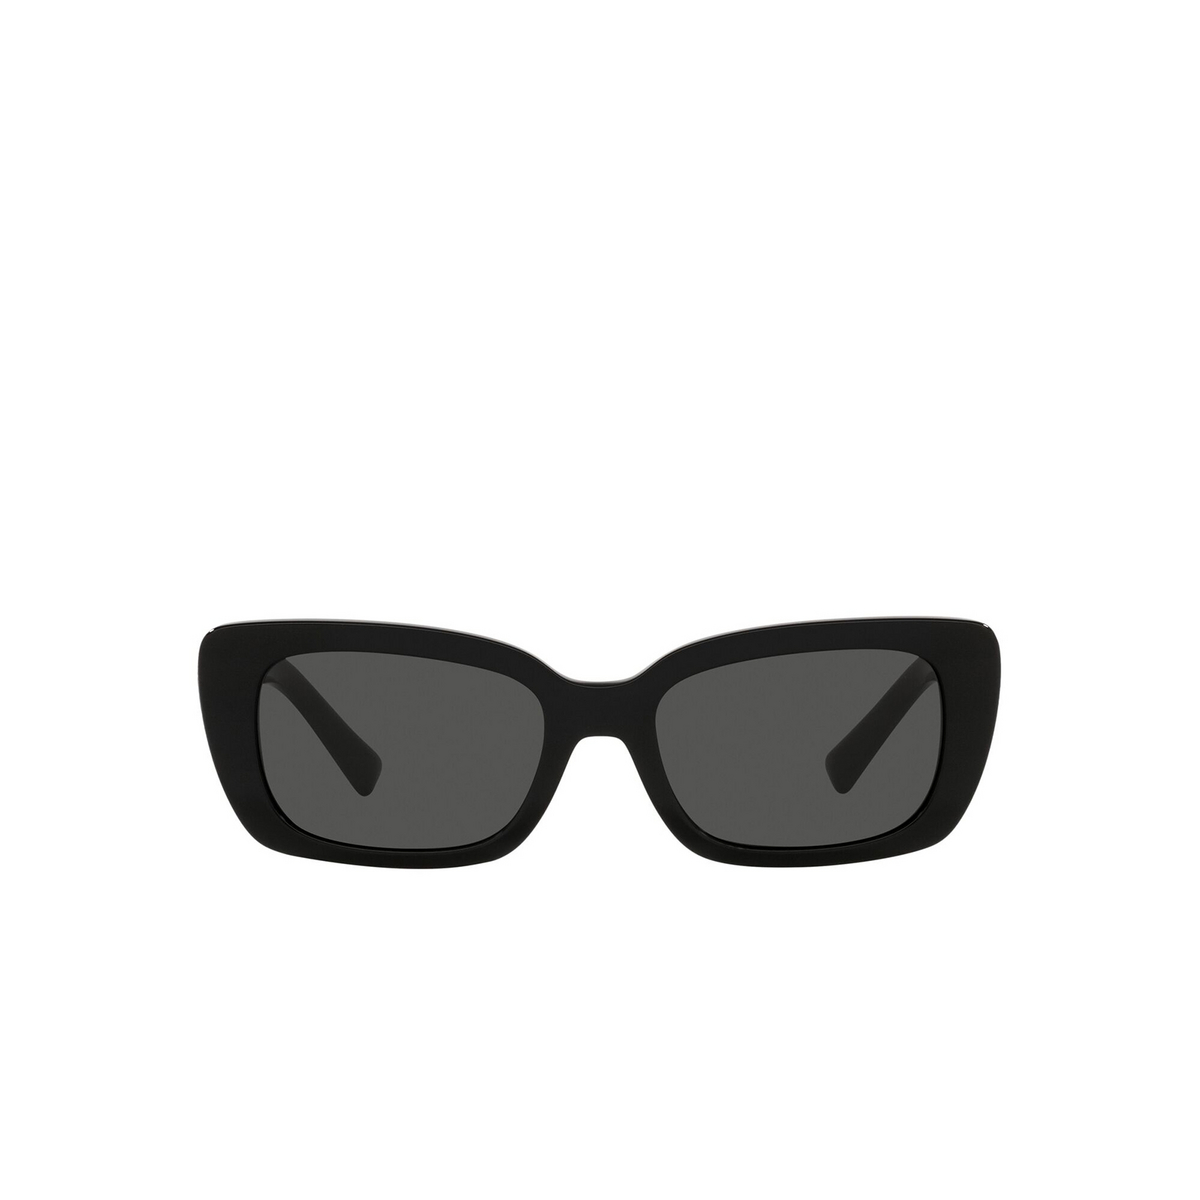 Valentino® Rectangle Sunglasses: VA4096 color Black 500187 - front view.